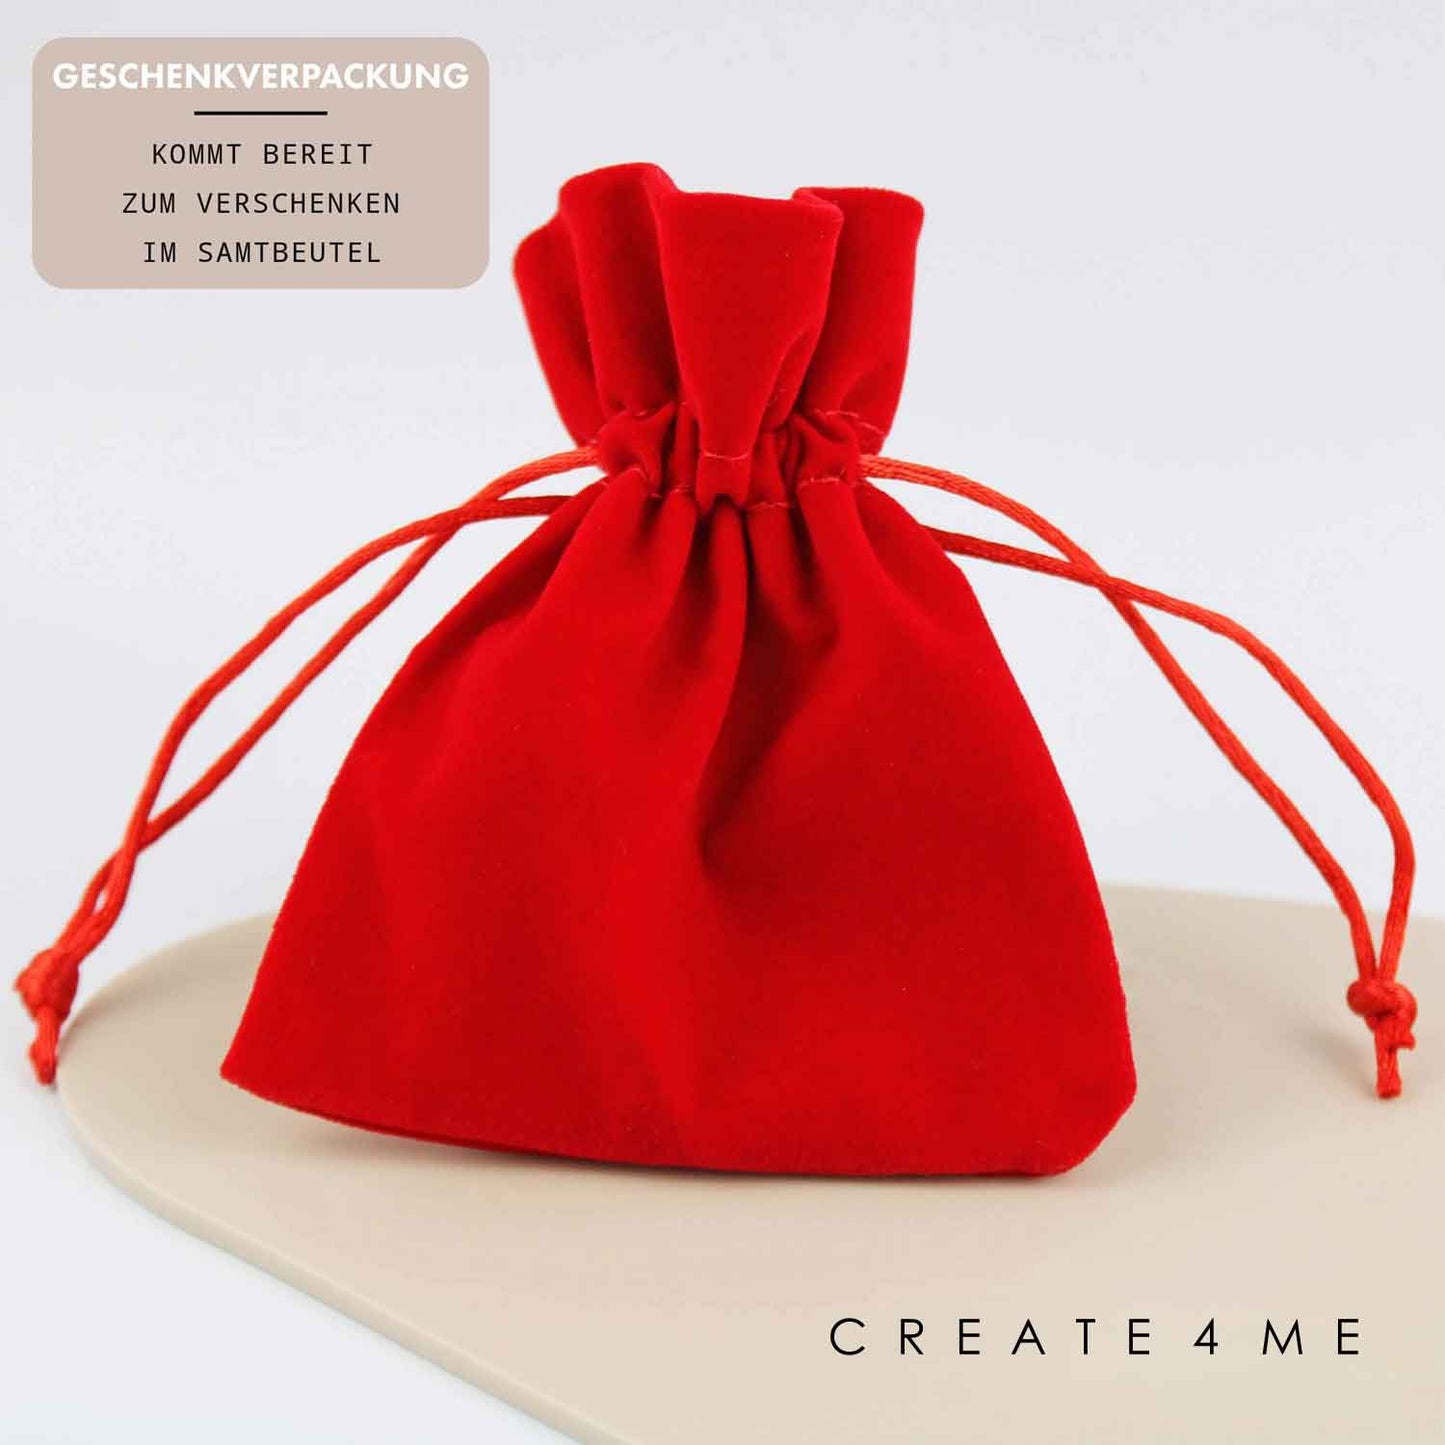 Geschenkverpackung - Von Oma verwöhnt - Schlüsselanhänger personalisiert - Create4me